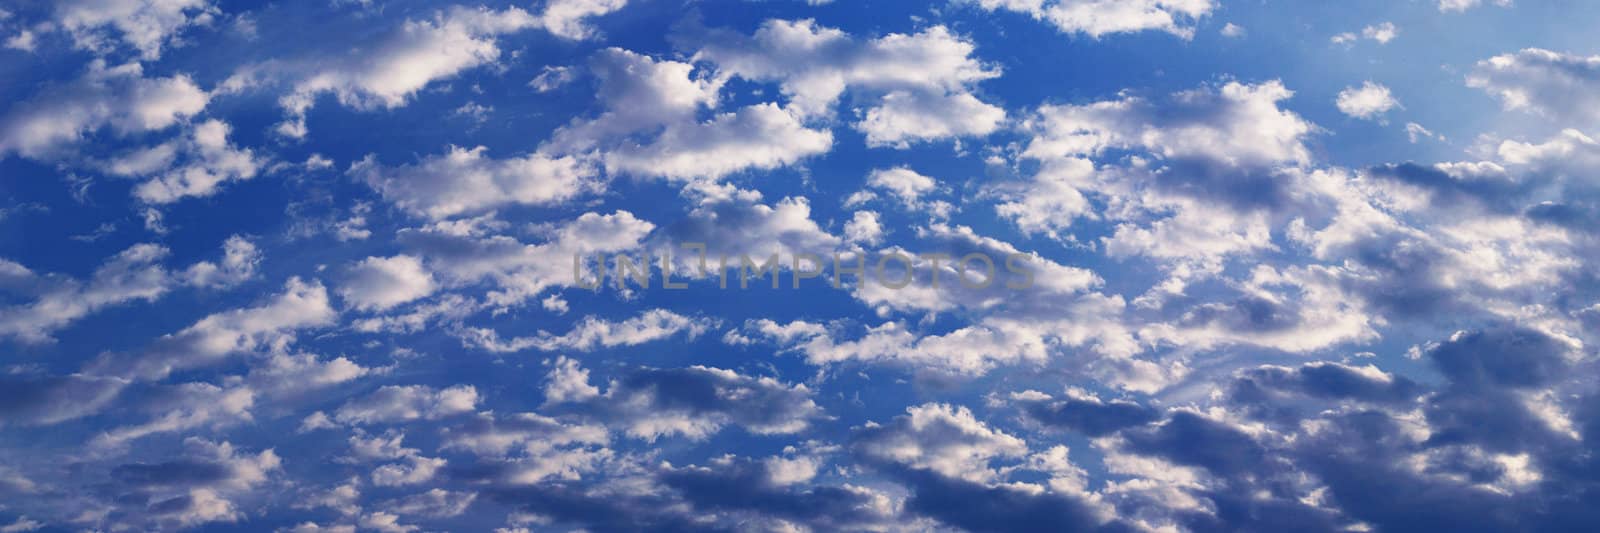 Sky and Cloud Panorama